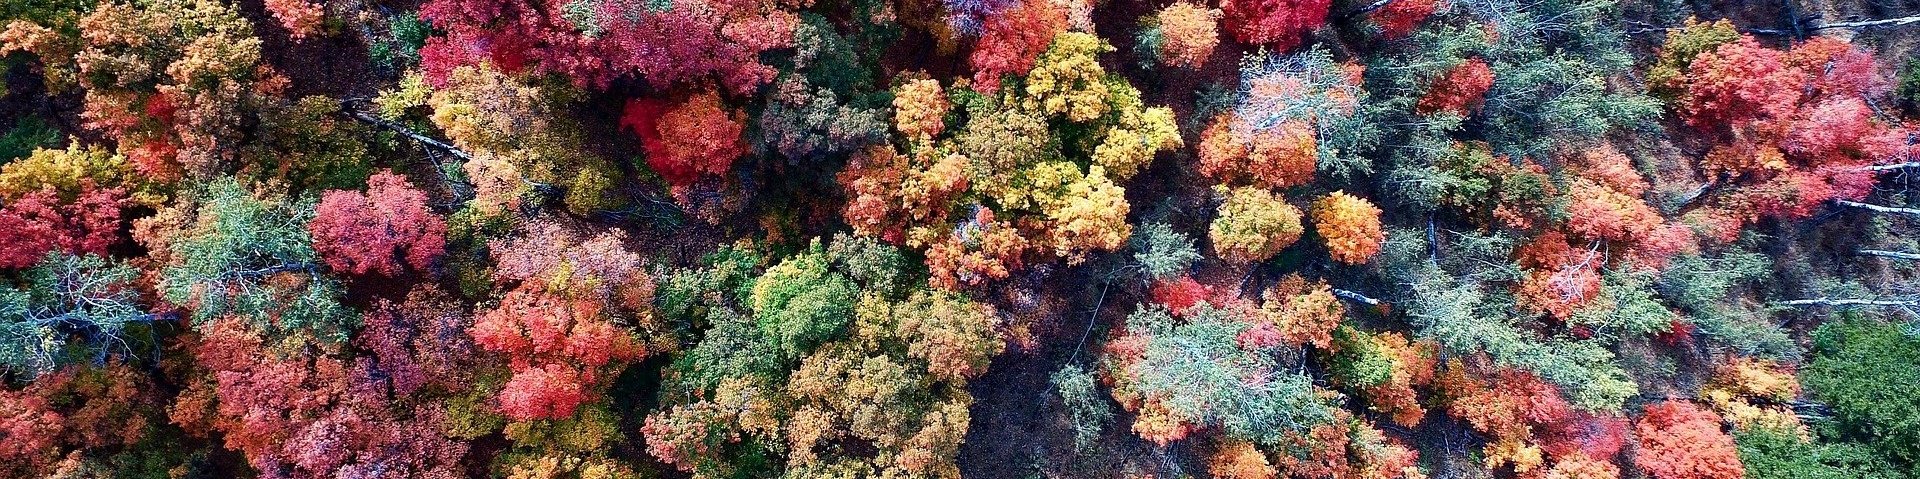 Farbige Laubkronen eines dichten Waldes von oben gesehen